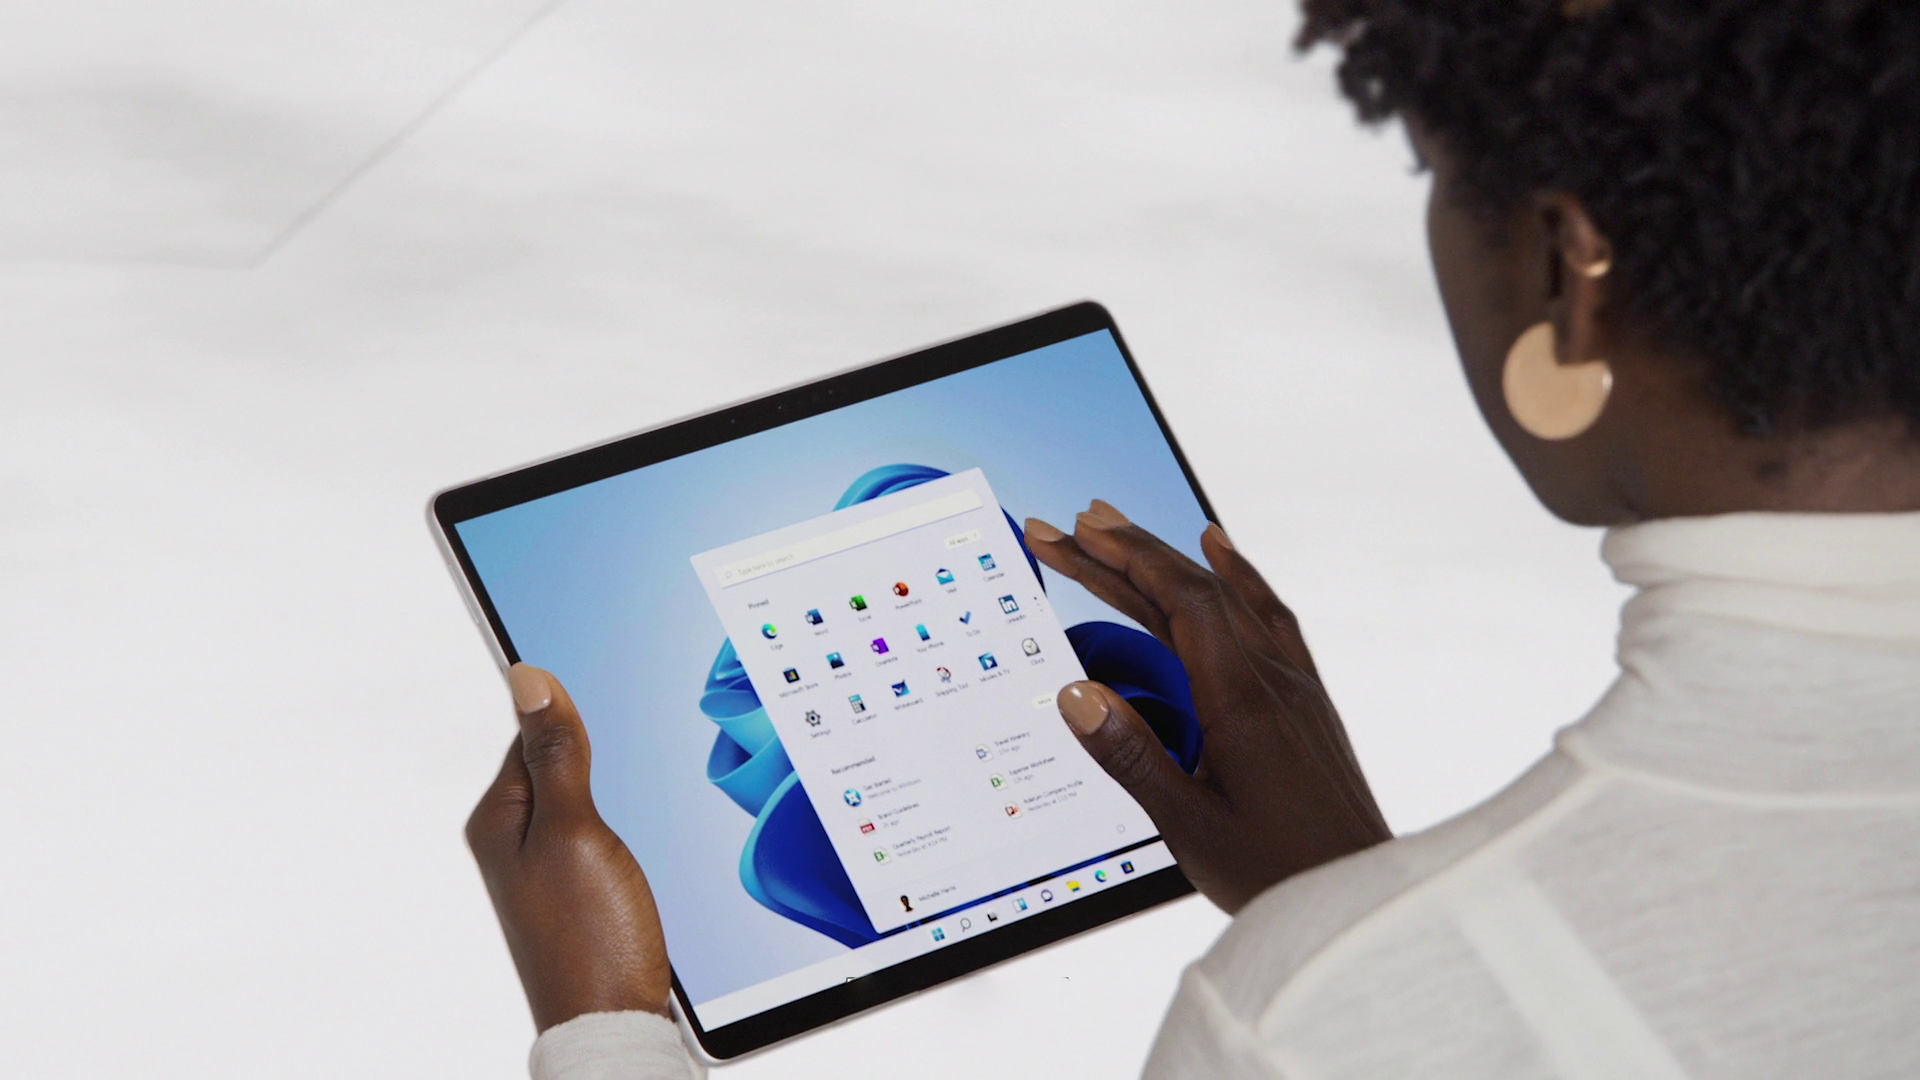 سرفیس پرو 9 قیمت خود را با عملکرد مناسب سخت افزارش، به قیمتی مناسب تبدیل کرده است Microsoft Surface Pro 9 